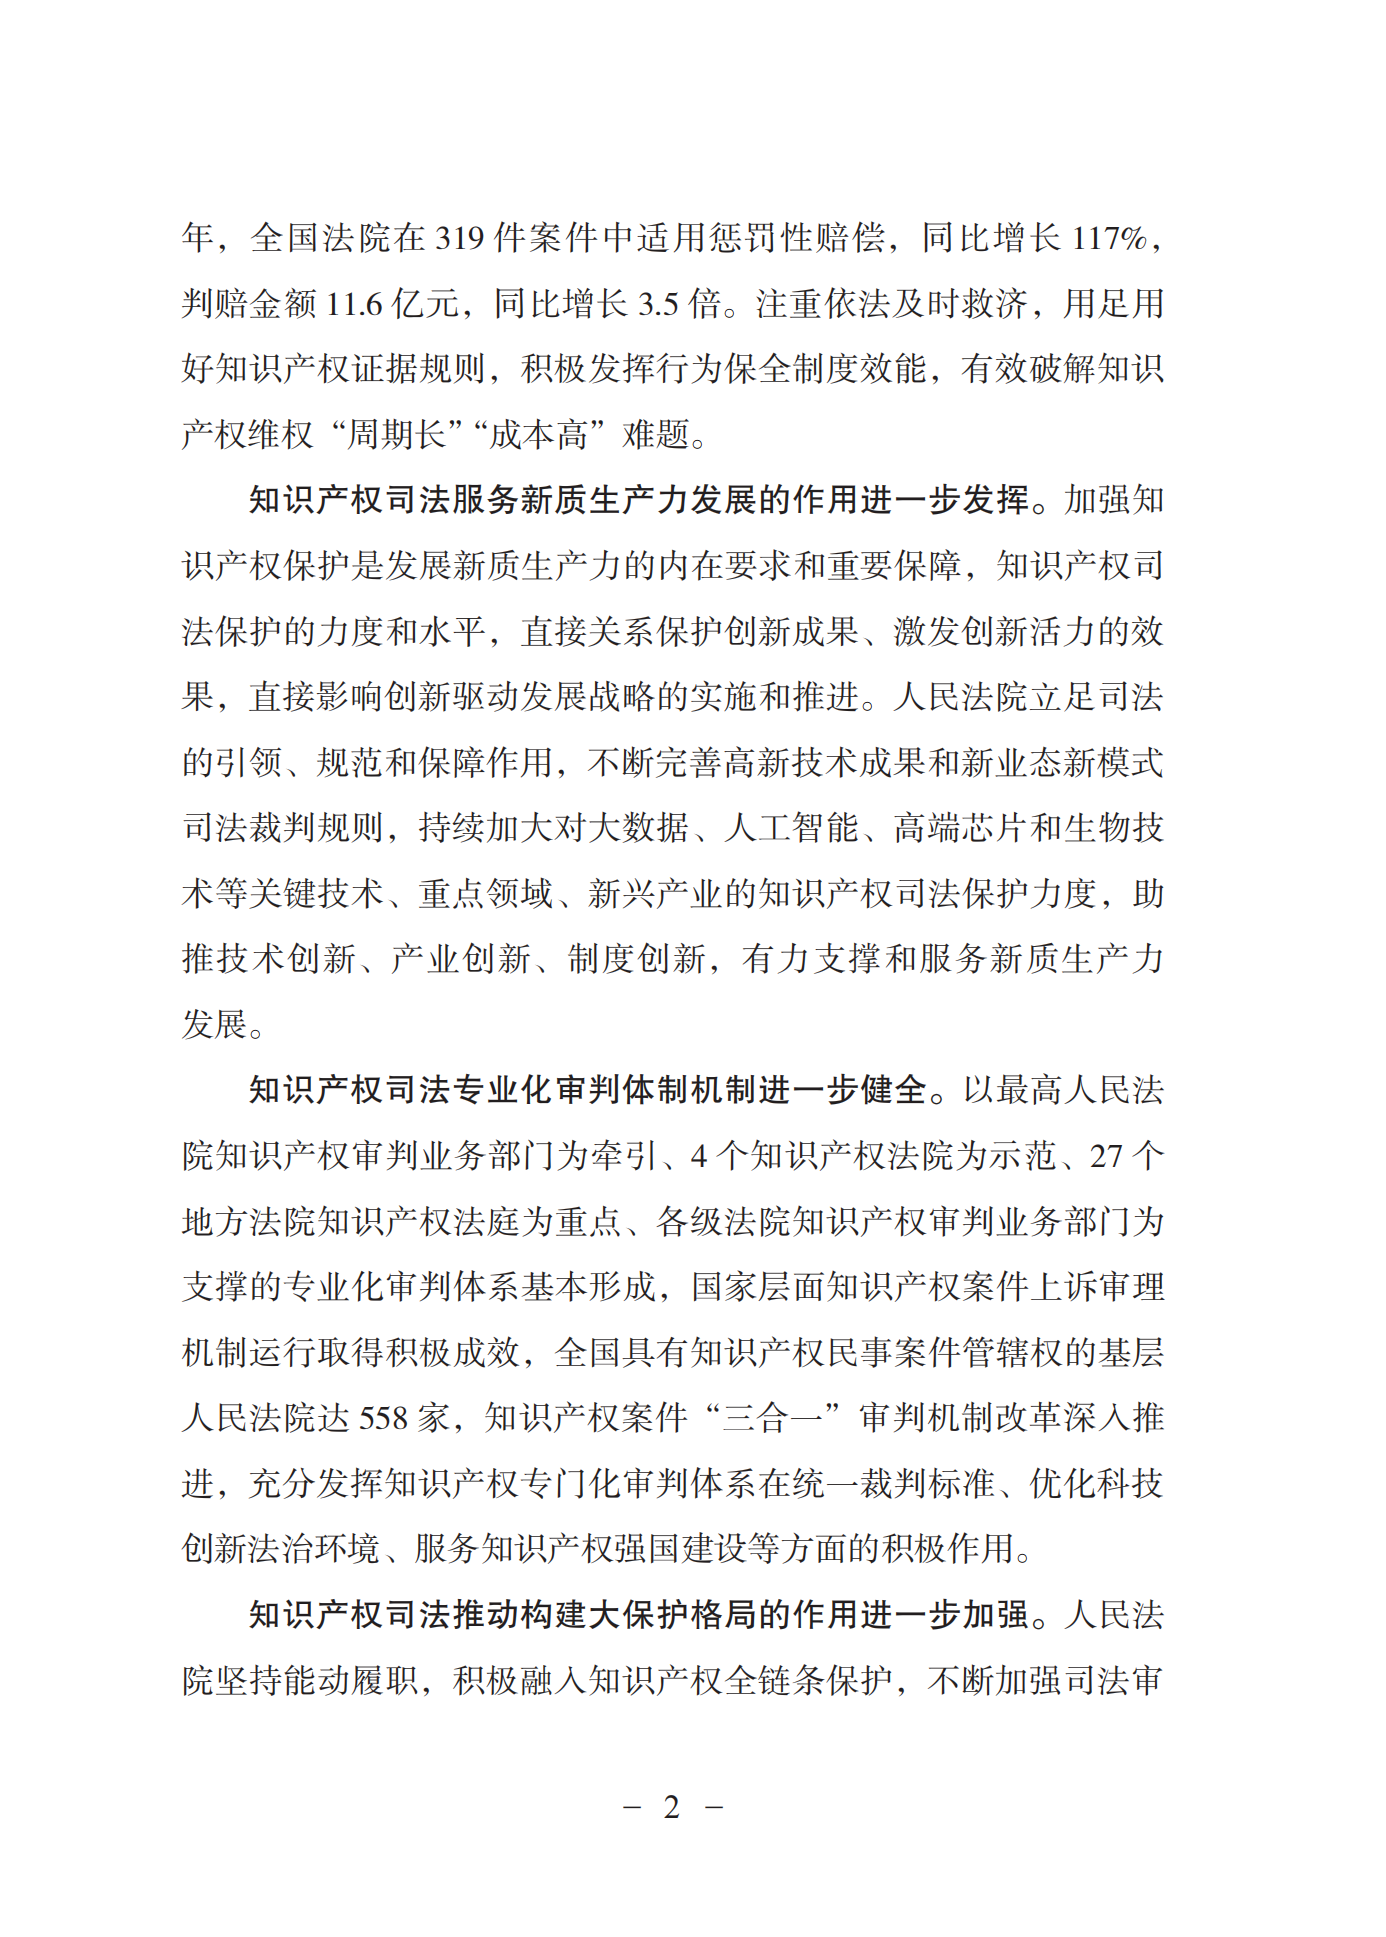 《中国法院知识产权司法保护状况(2023年)》全文发布！